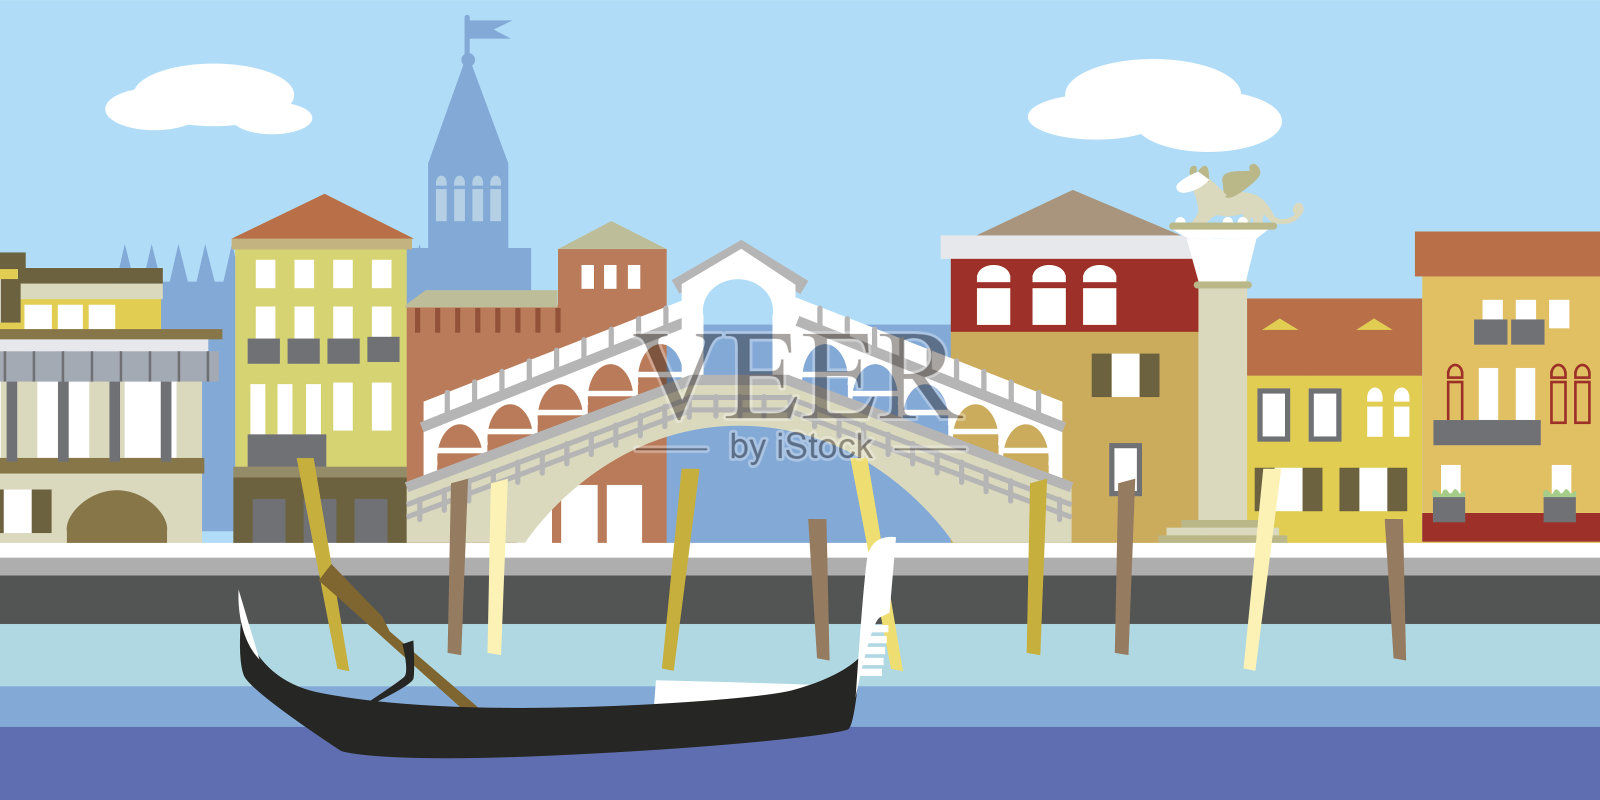 矢量插图的威尼斯城市景观在简单的风格。传统的意大利风景。老式欧洲风格的房子。河道及船只。插画图片素材